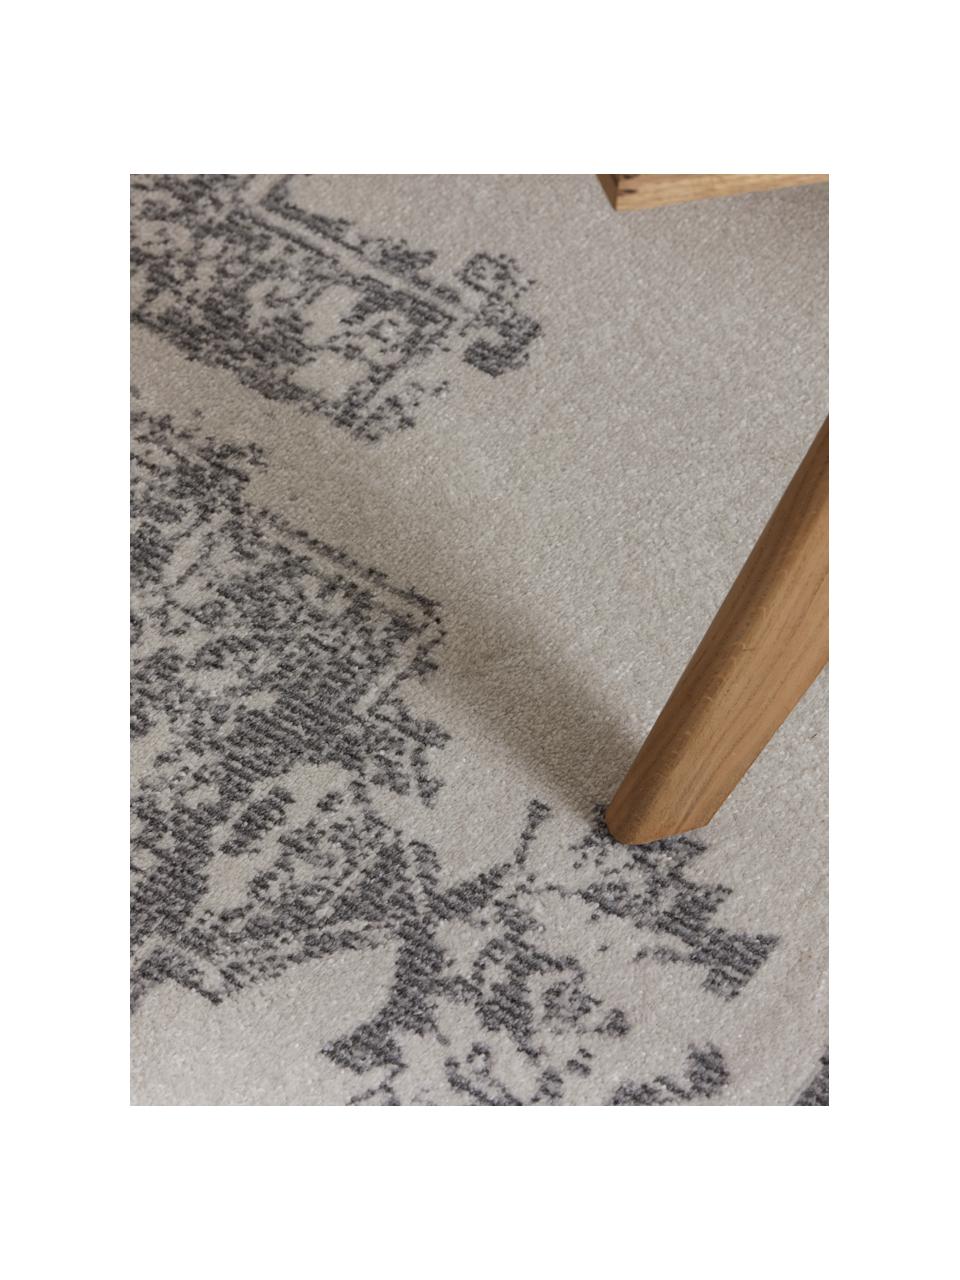 Kulatý interiérový/exteriérový koberec ve vintage stylu Everly, 100 % polypropylen, Šedá, Ø 150 cm (velikost M)